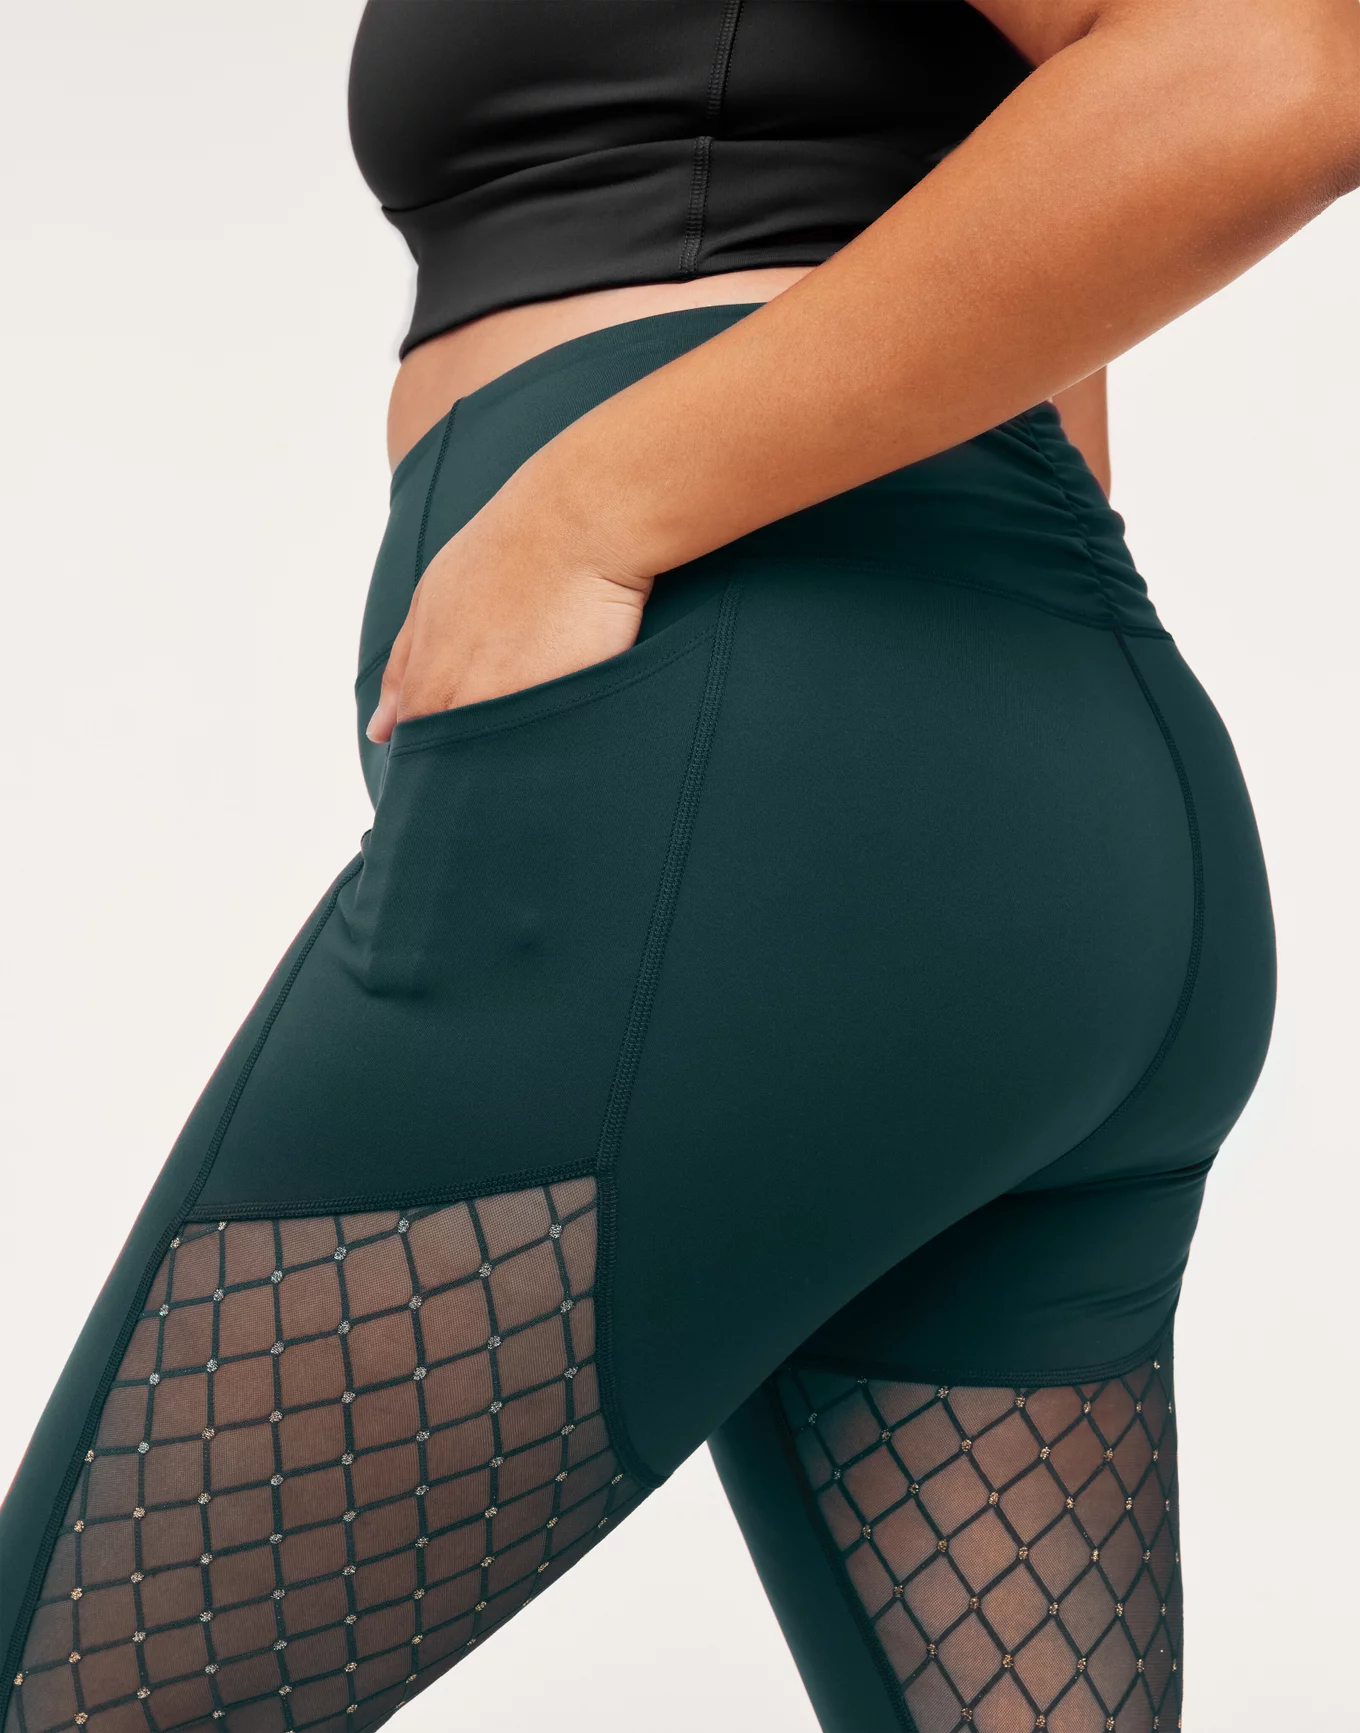 CHRLEISURE Sexy Women Leggings Gothic Insert Mesh Design Trousers Pant -  nexusfitness